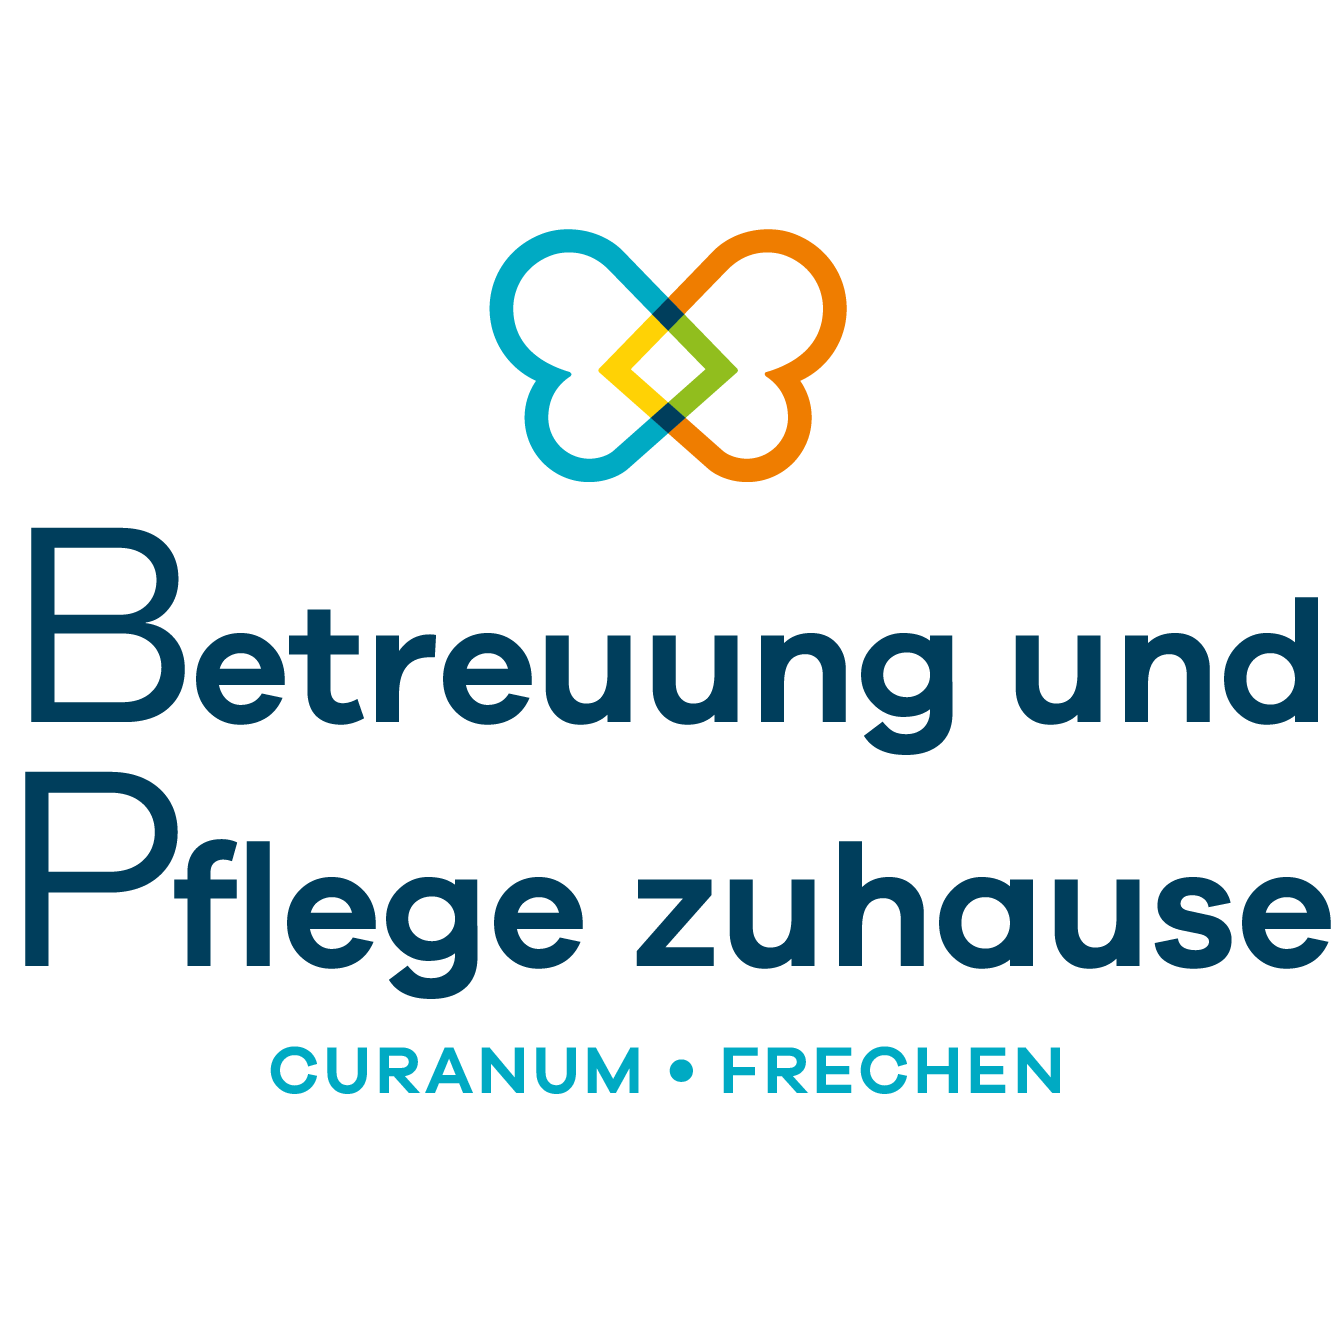 Betreuung und Pflege zuhause Curanum Frechen Logo